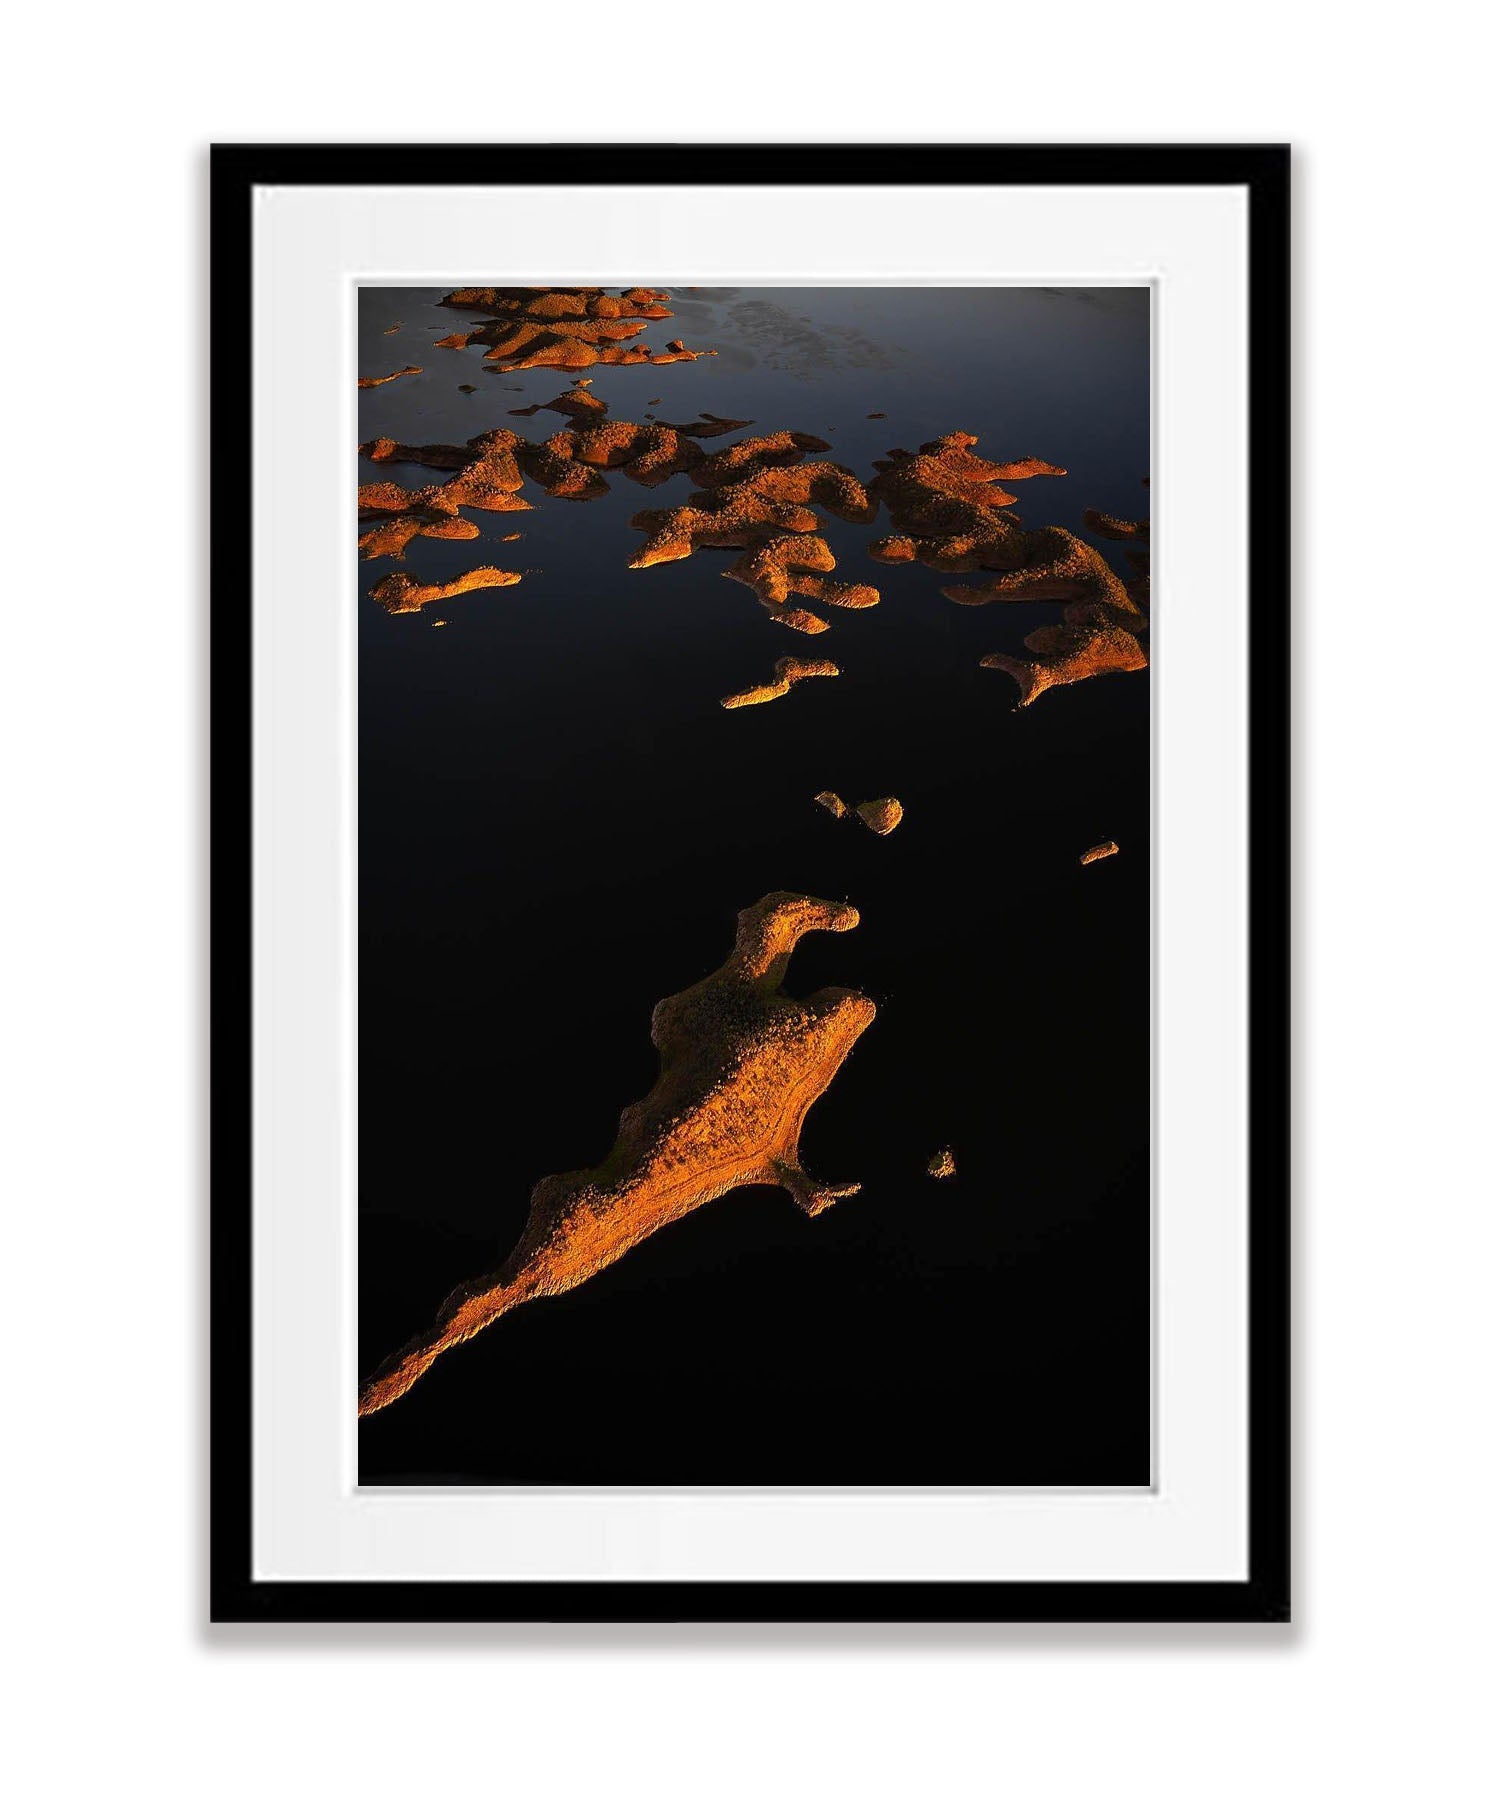 Lake Argyle #10 - The Kimberley